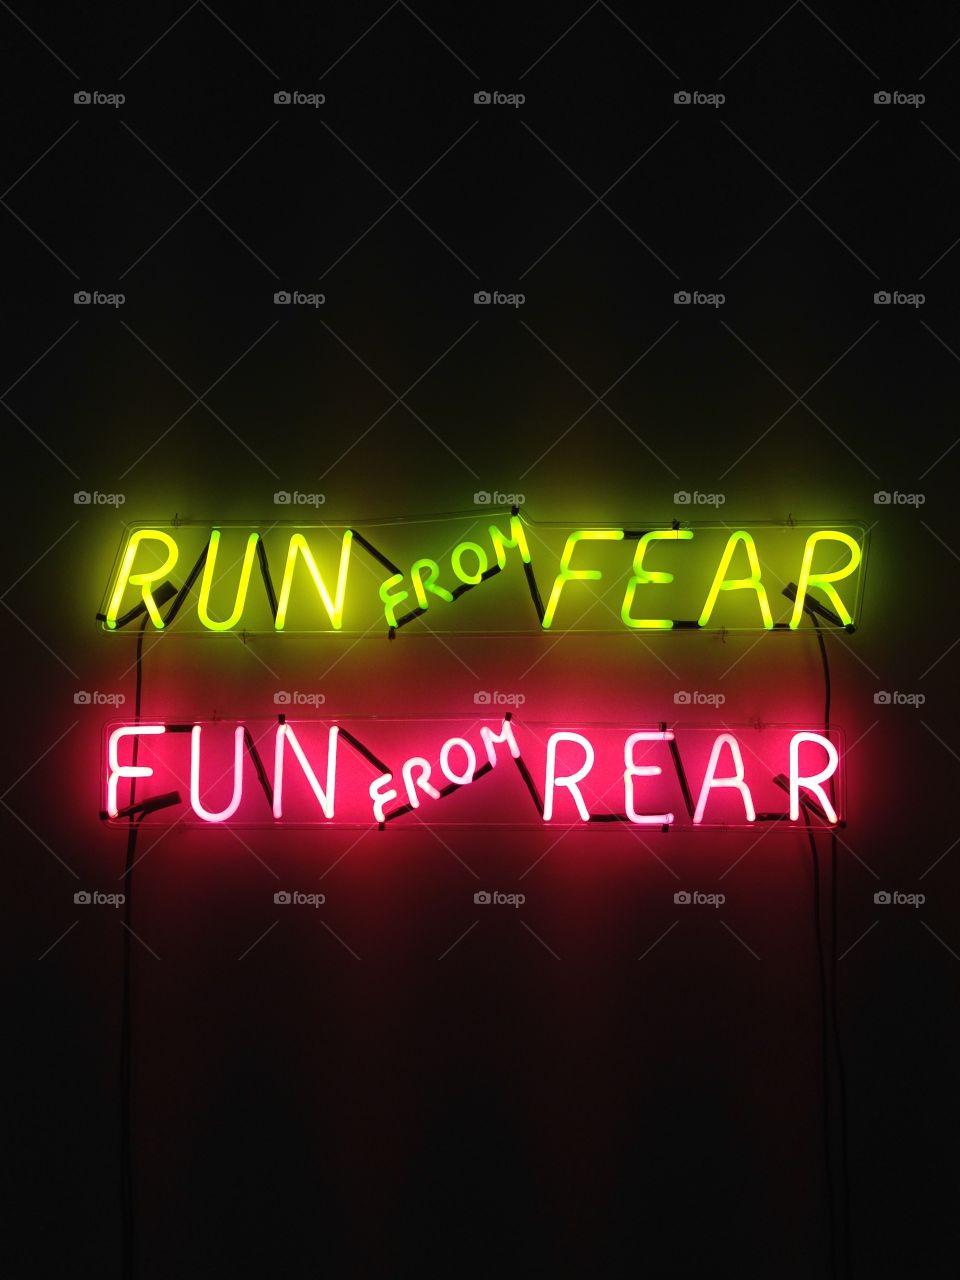 Run from Fear, Fun from Rear